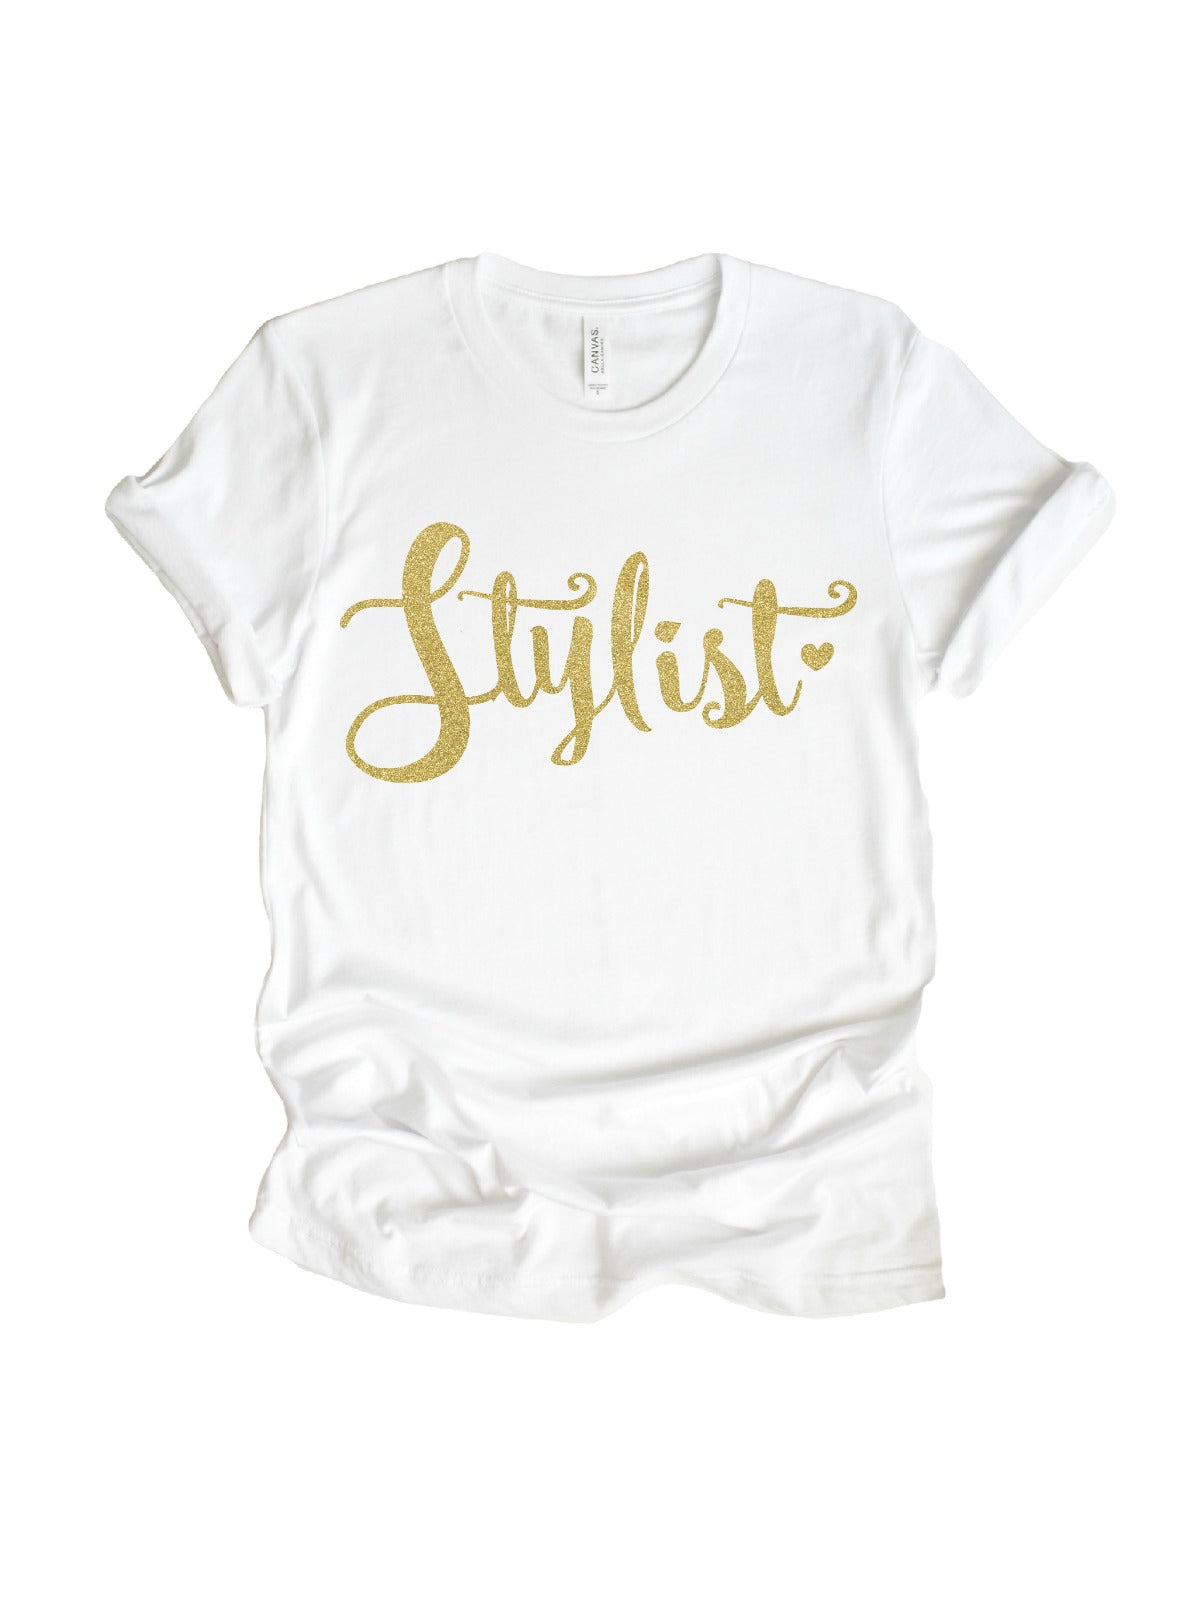 women's stylist t-shirt in glitter gold